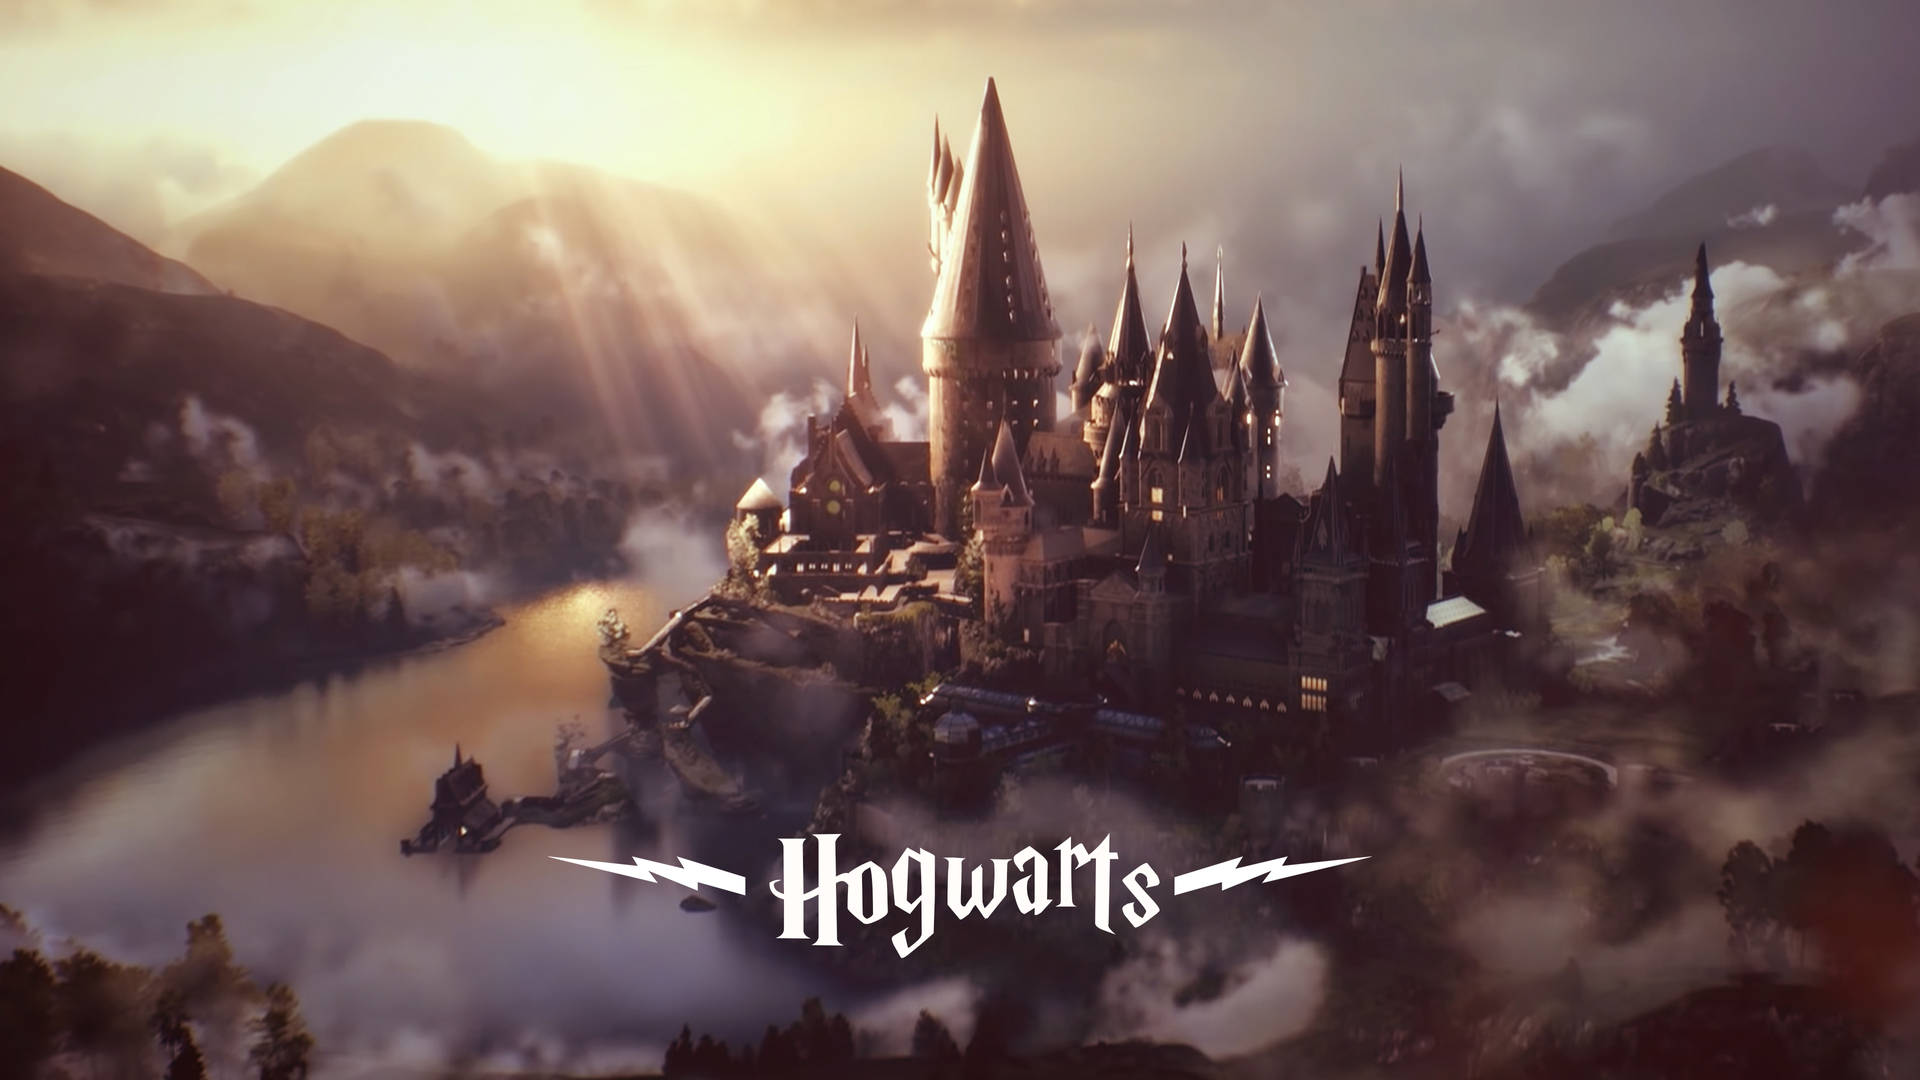 Imágenes De La Estética De Hogwarts